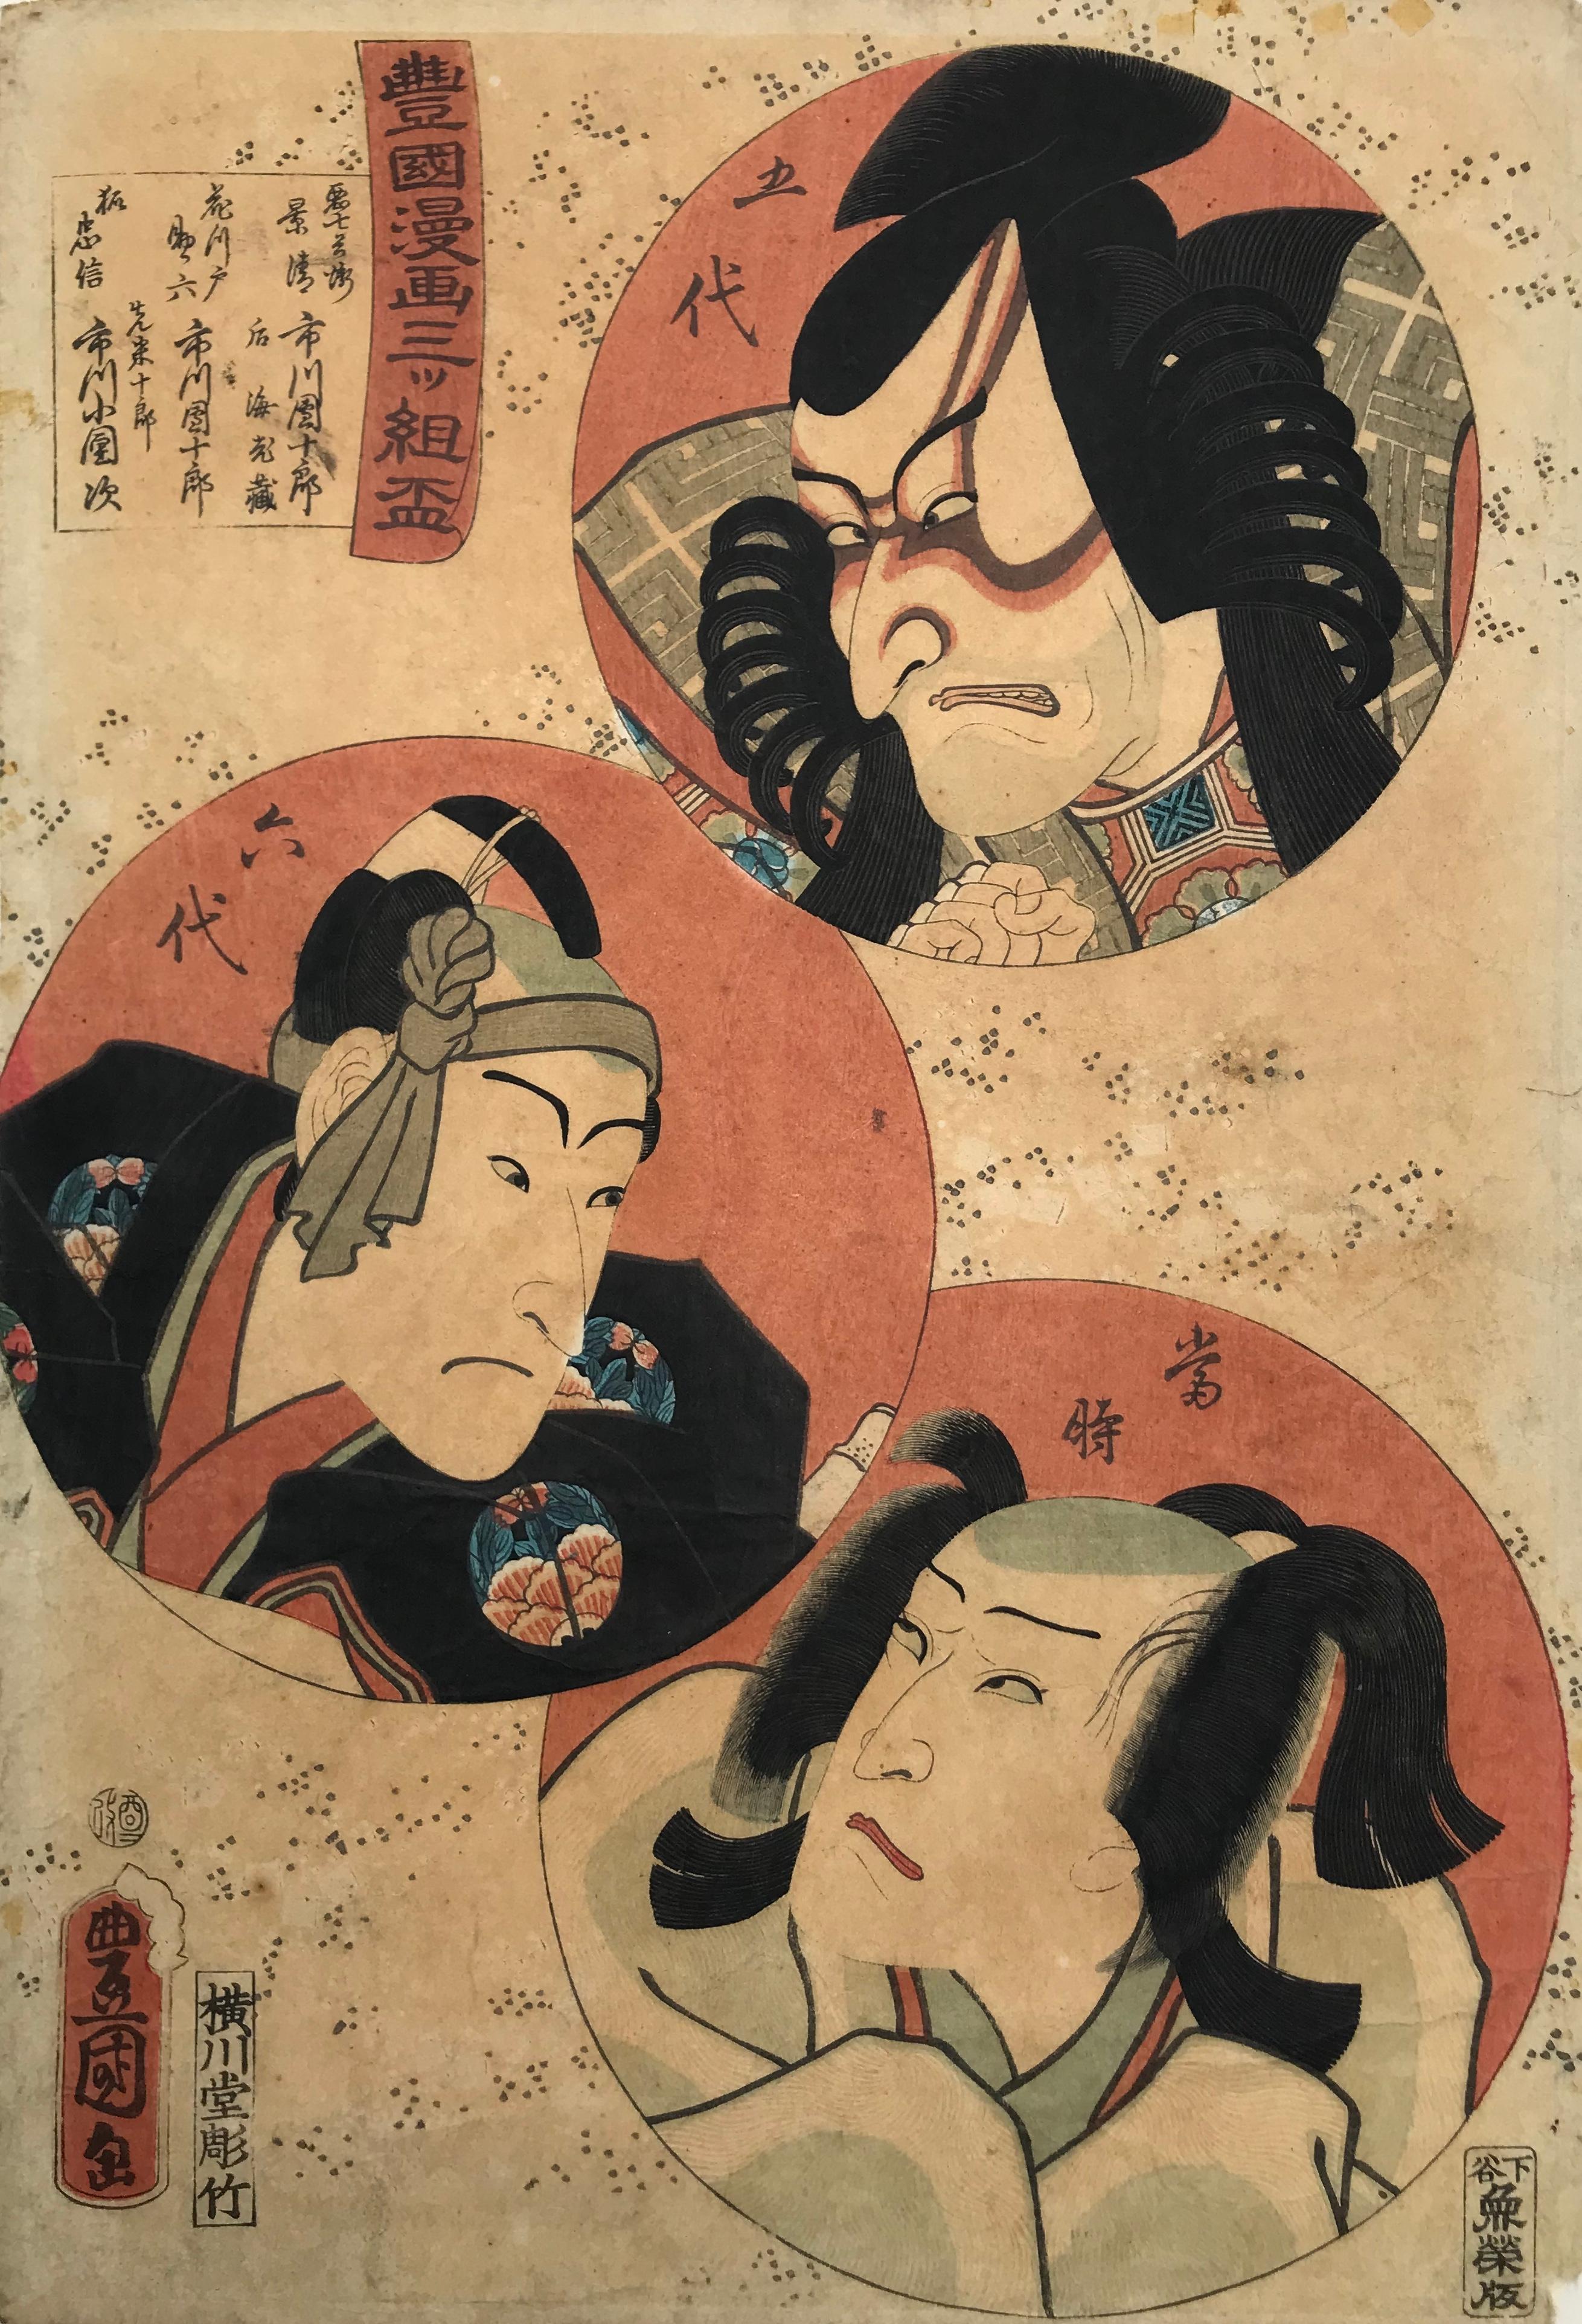 Utagawa Kunisada (Toyokuni III) Print - 3 Kabuki Actors